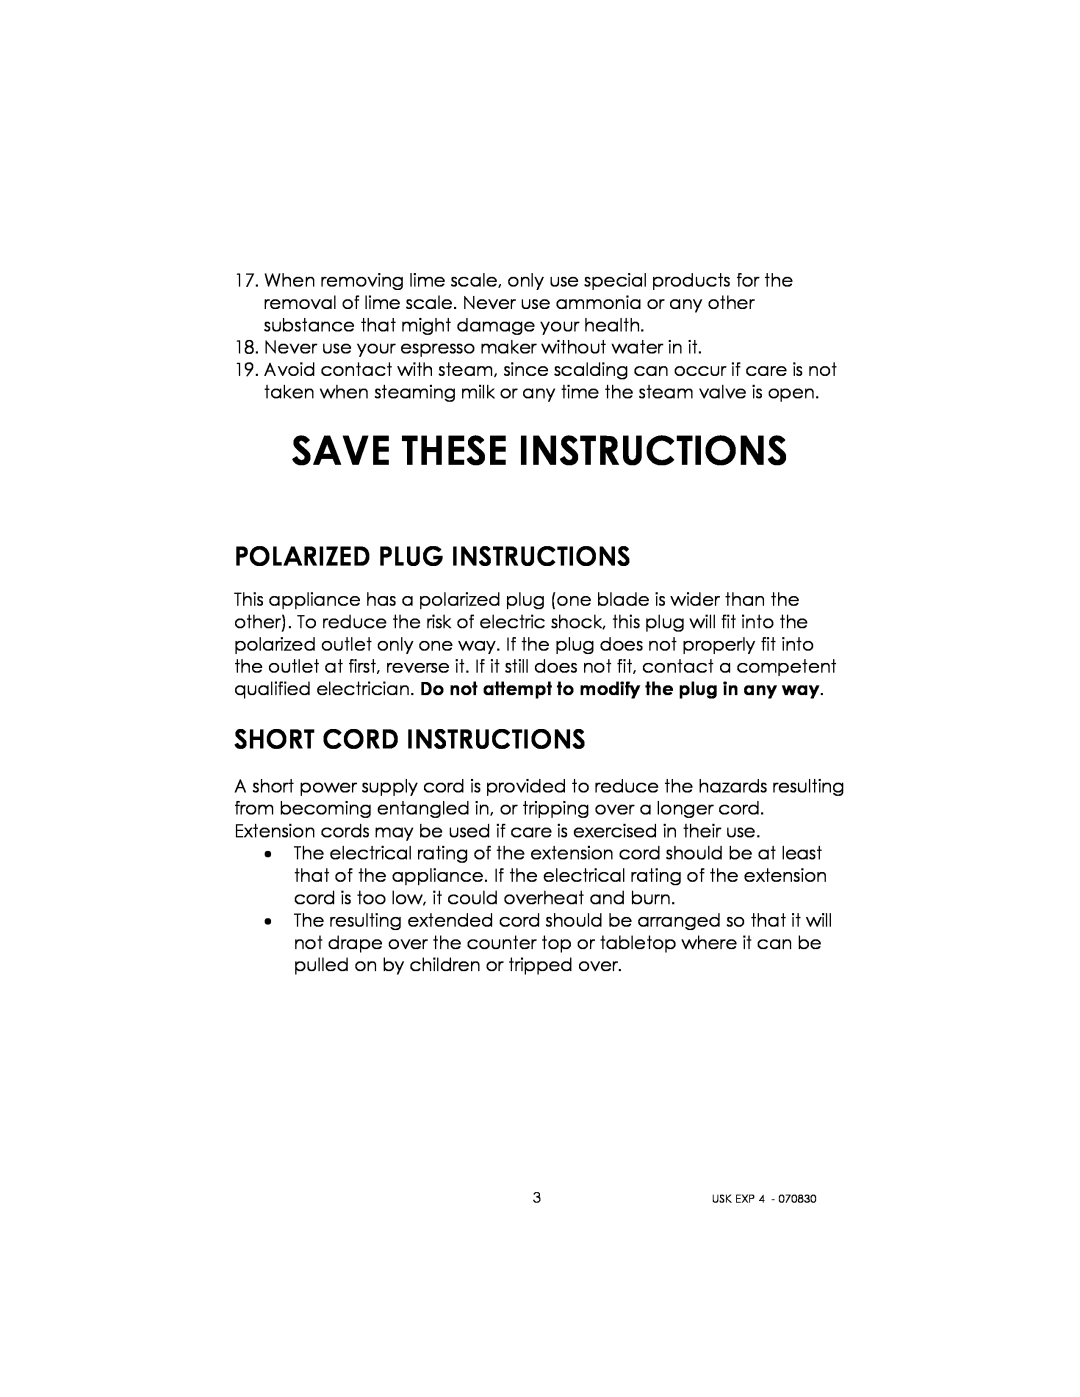 Kalorik USK EXP 4 manual Save These Instructions, Polarized Plug Instructions, Short Cord Instructions 